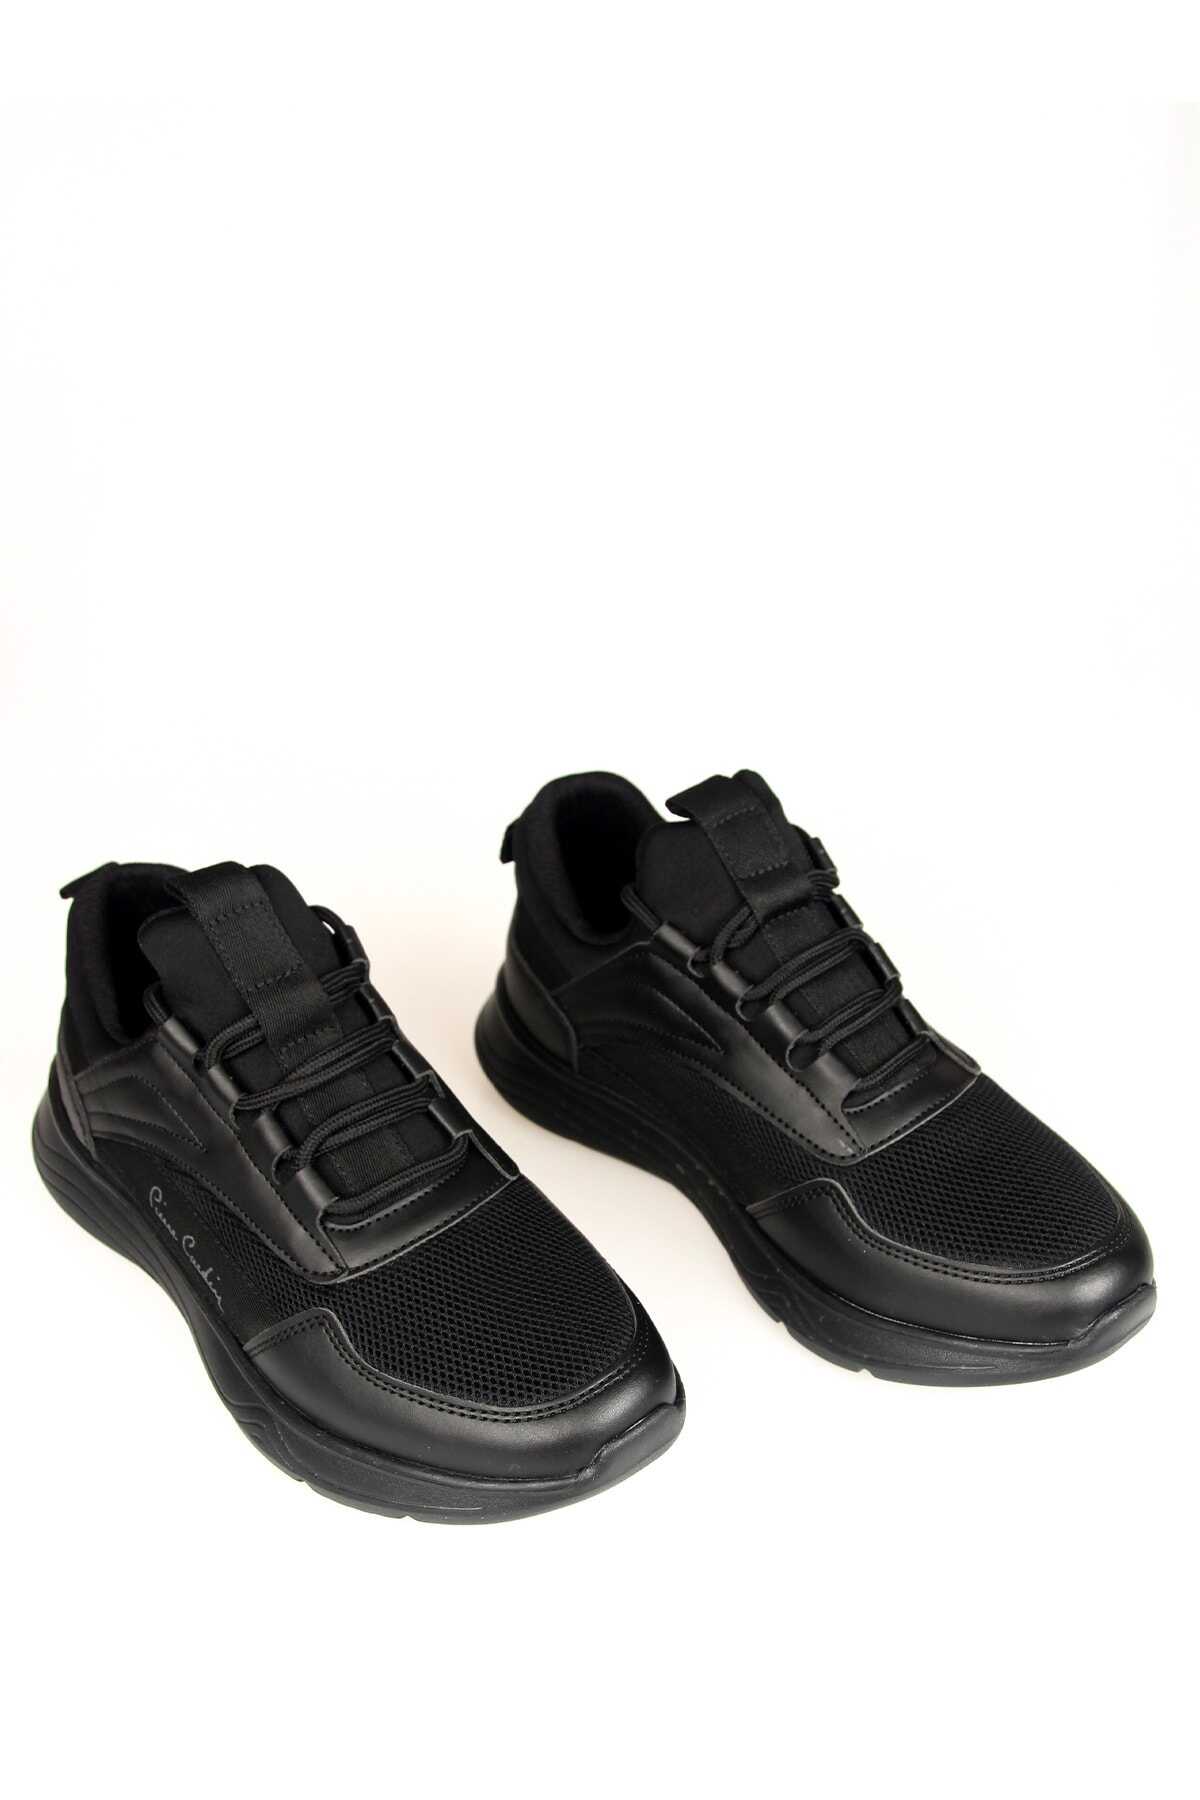 کفش ورزشی توری یونیسکس مدل Dio Gomez مشکی برند Pierre Cardin 